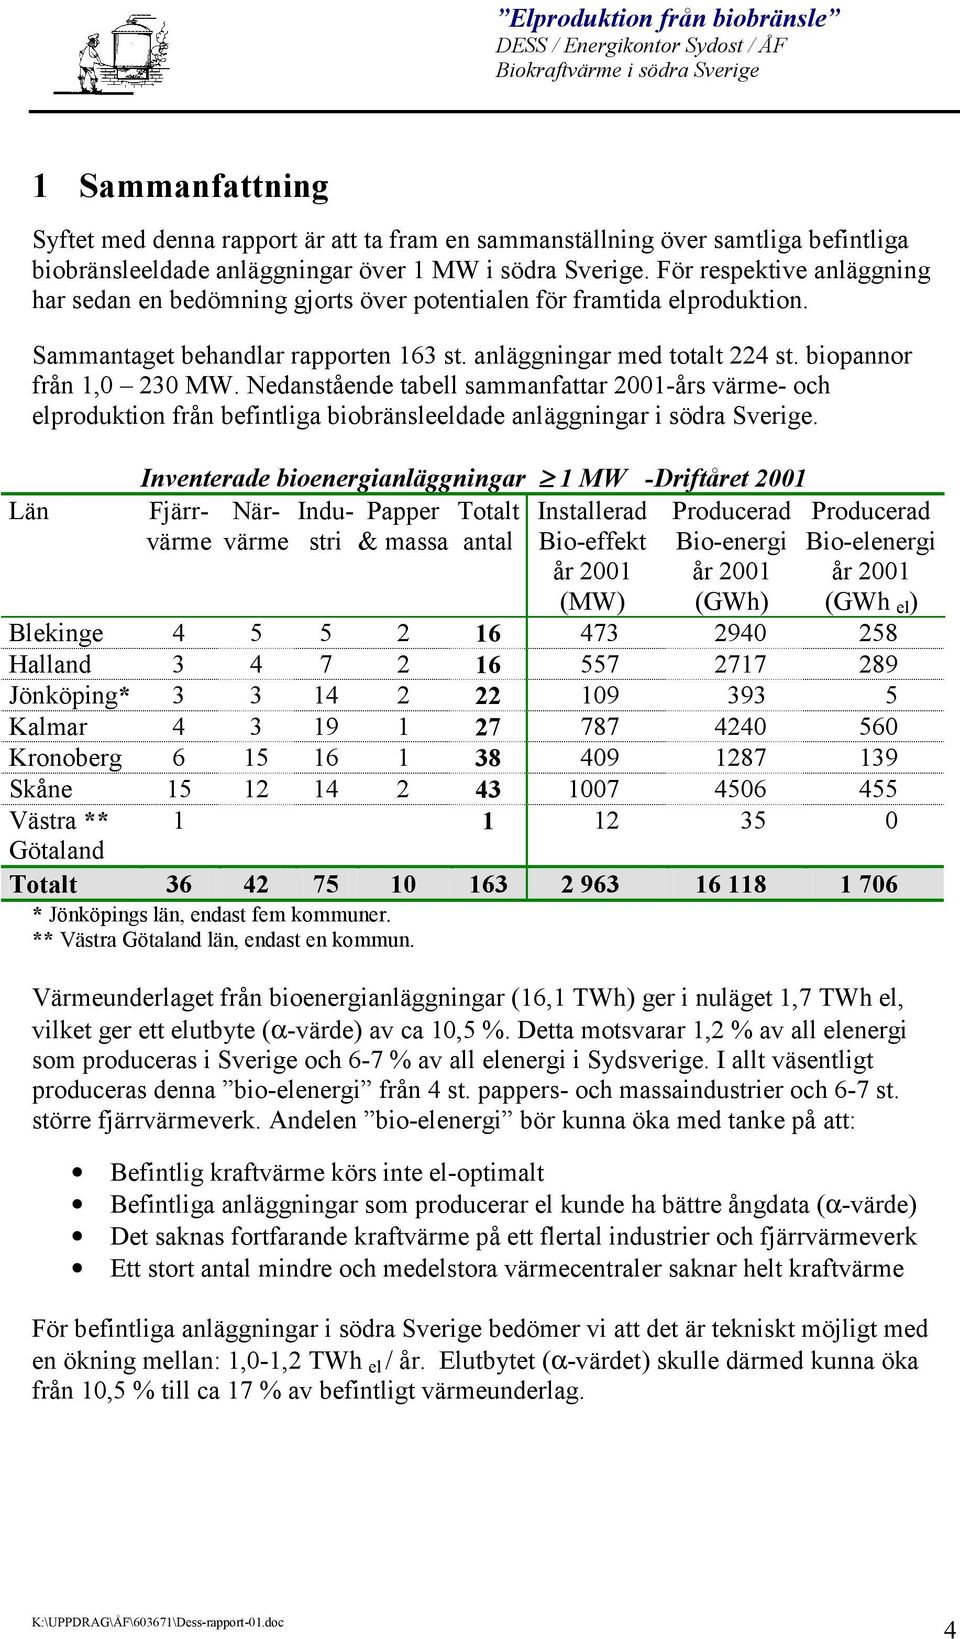 Nedanstående tabell sammanfattar 2001-års värme- och elproduktion från befintliga biobränsleeldade anläggningar i södra Sverige.